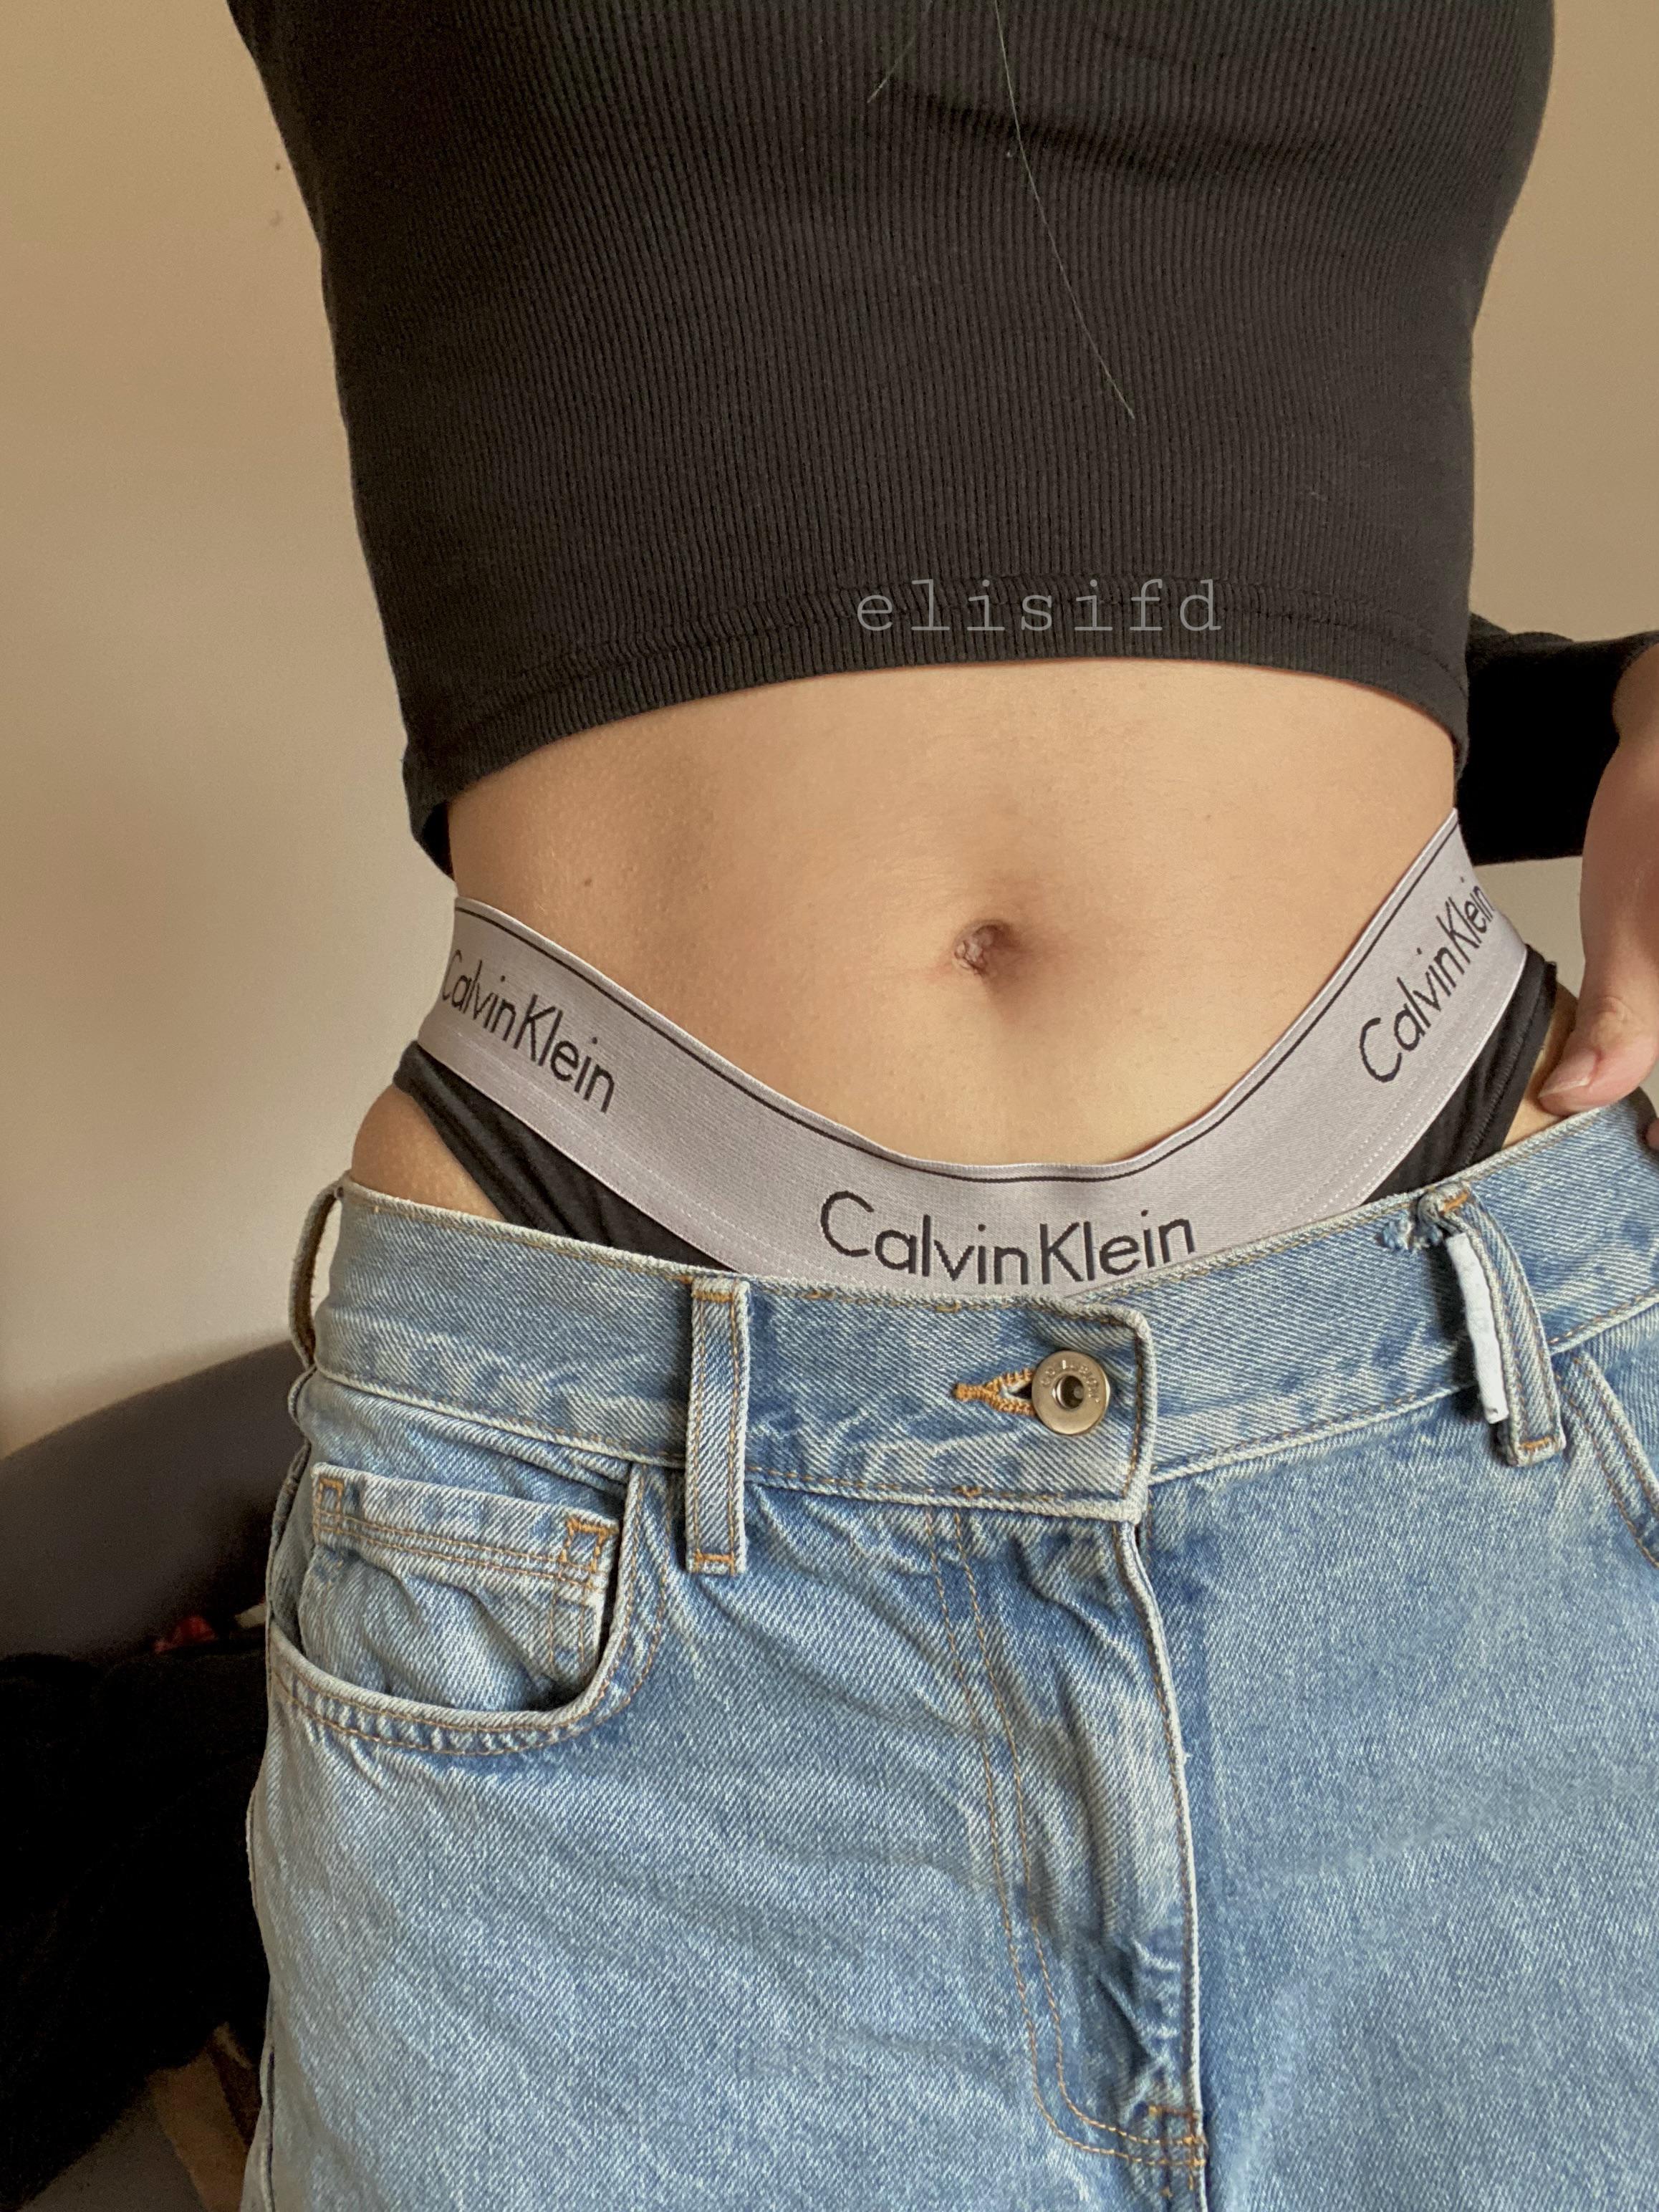 Should I wear a belt? | Scrolller